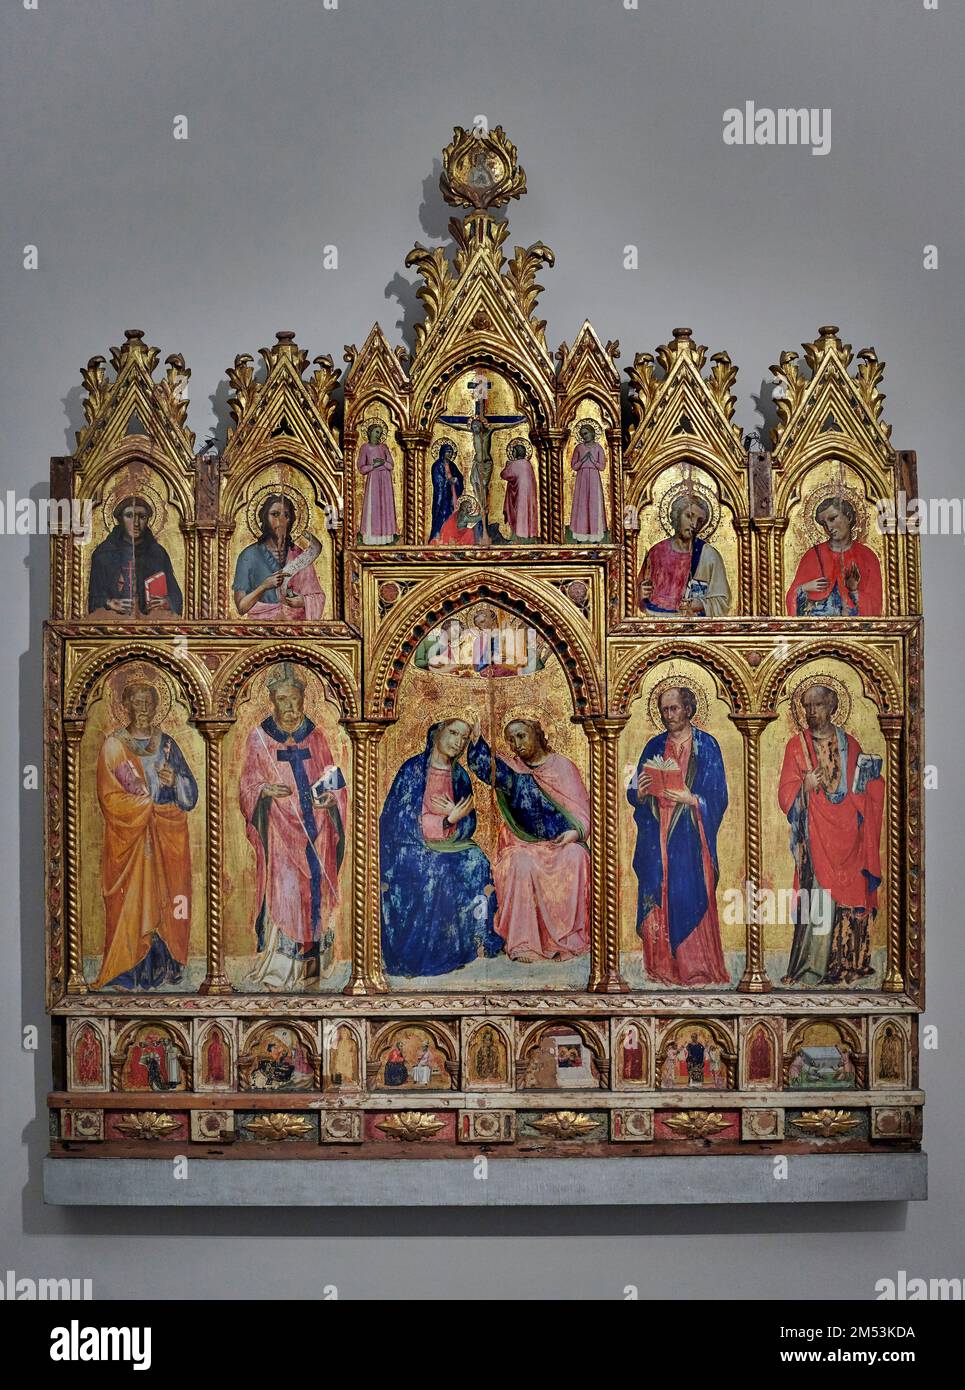 al centro: Incoronazione della Vergine, S. Pietro,S. Ambrogio,S. Marco, S. Paolo, in alto : Crocifisso con i dolenti e due angeli, S. Framcesco, S. Gi Stock Photo